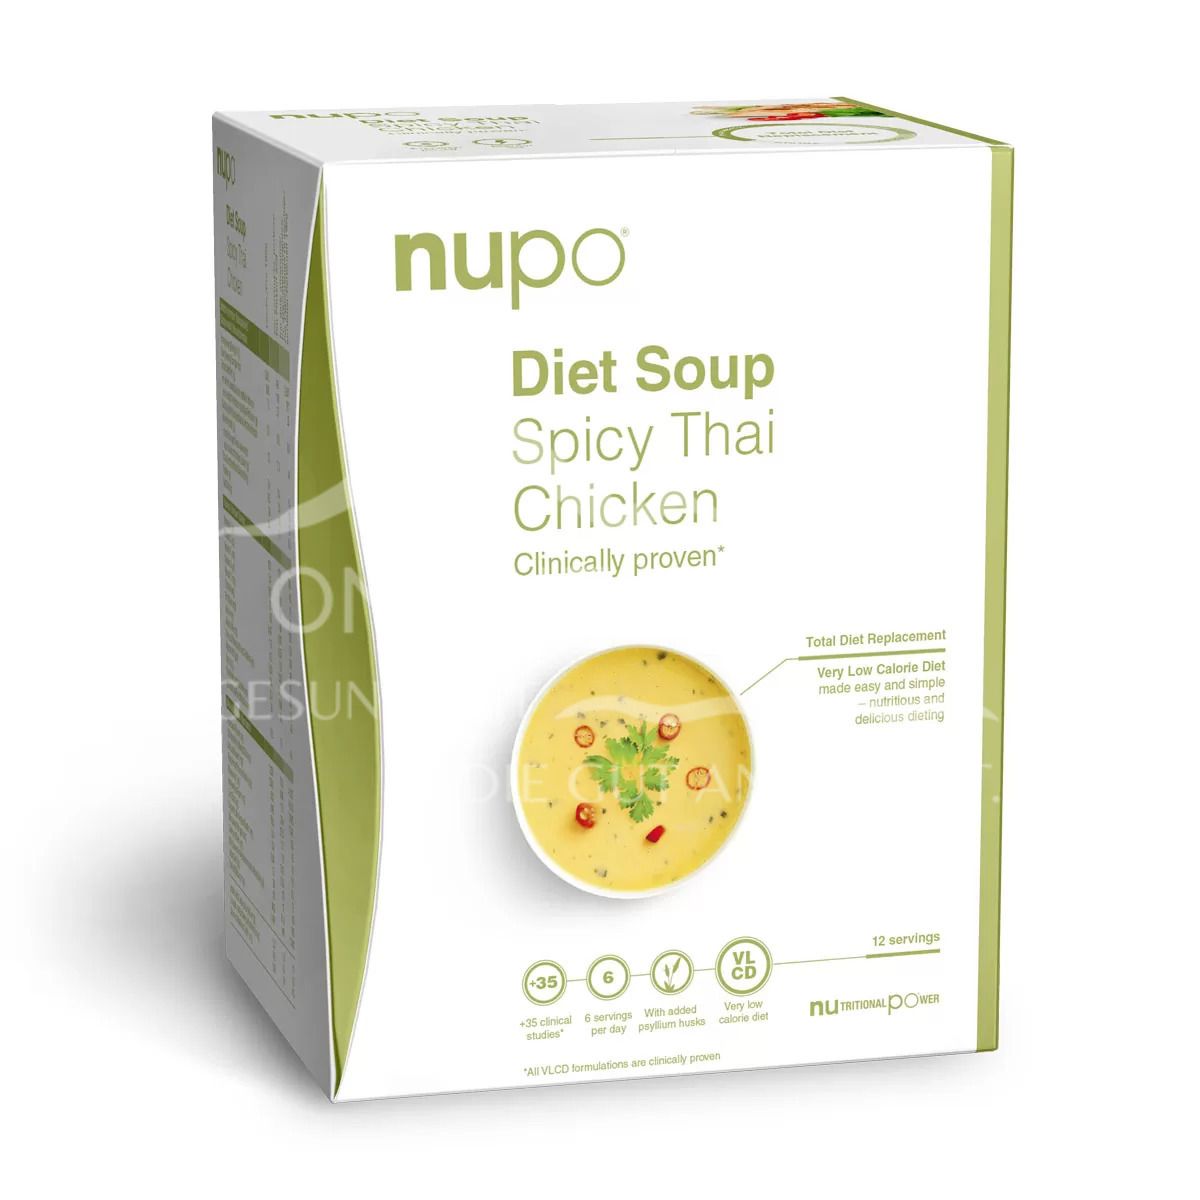 Nupo Diet Soup Spicy Thai Chicken